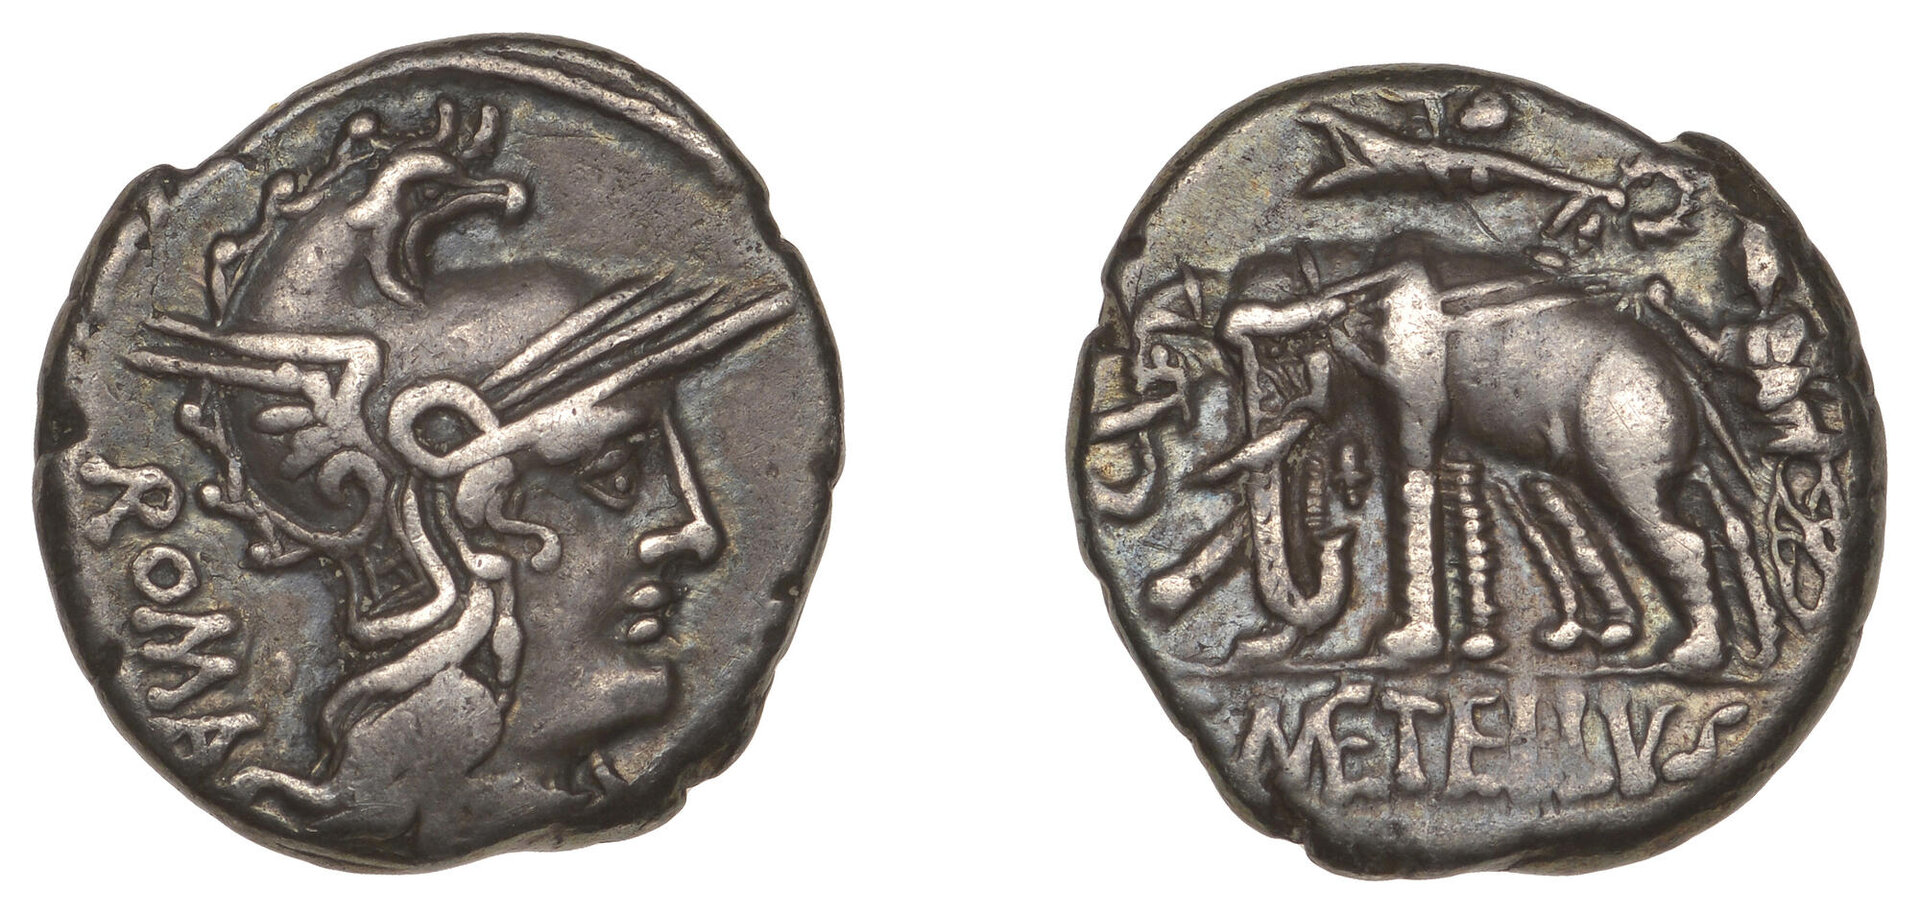 C. Metellus Caprarius Roma in Phrygian helmet - Jupiter in biga of elephants Cr. 269-1 jpg.jpg